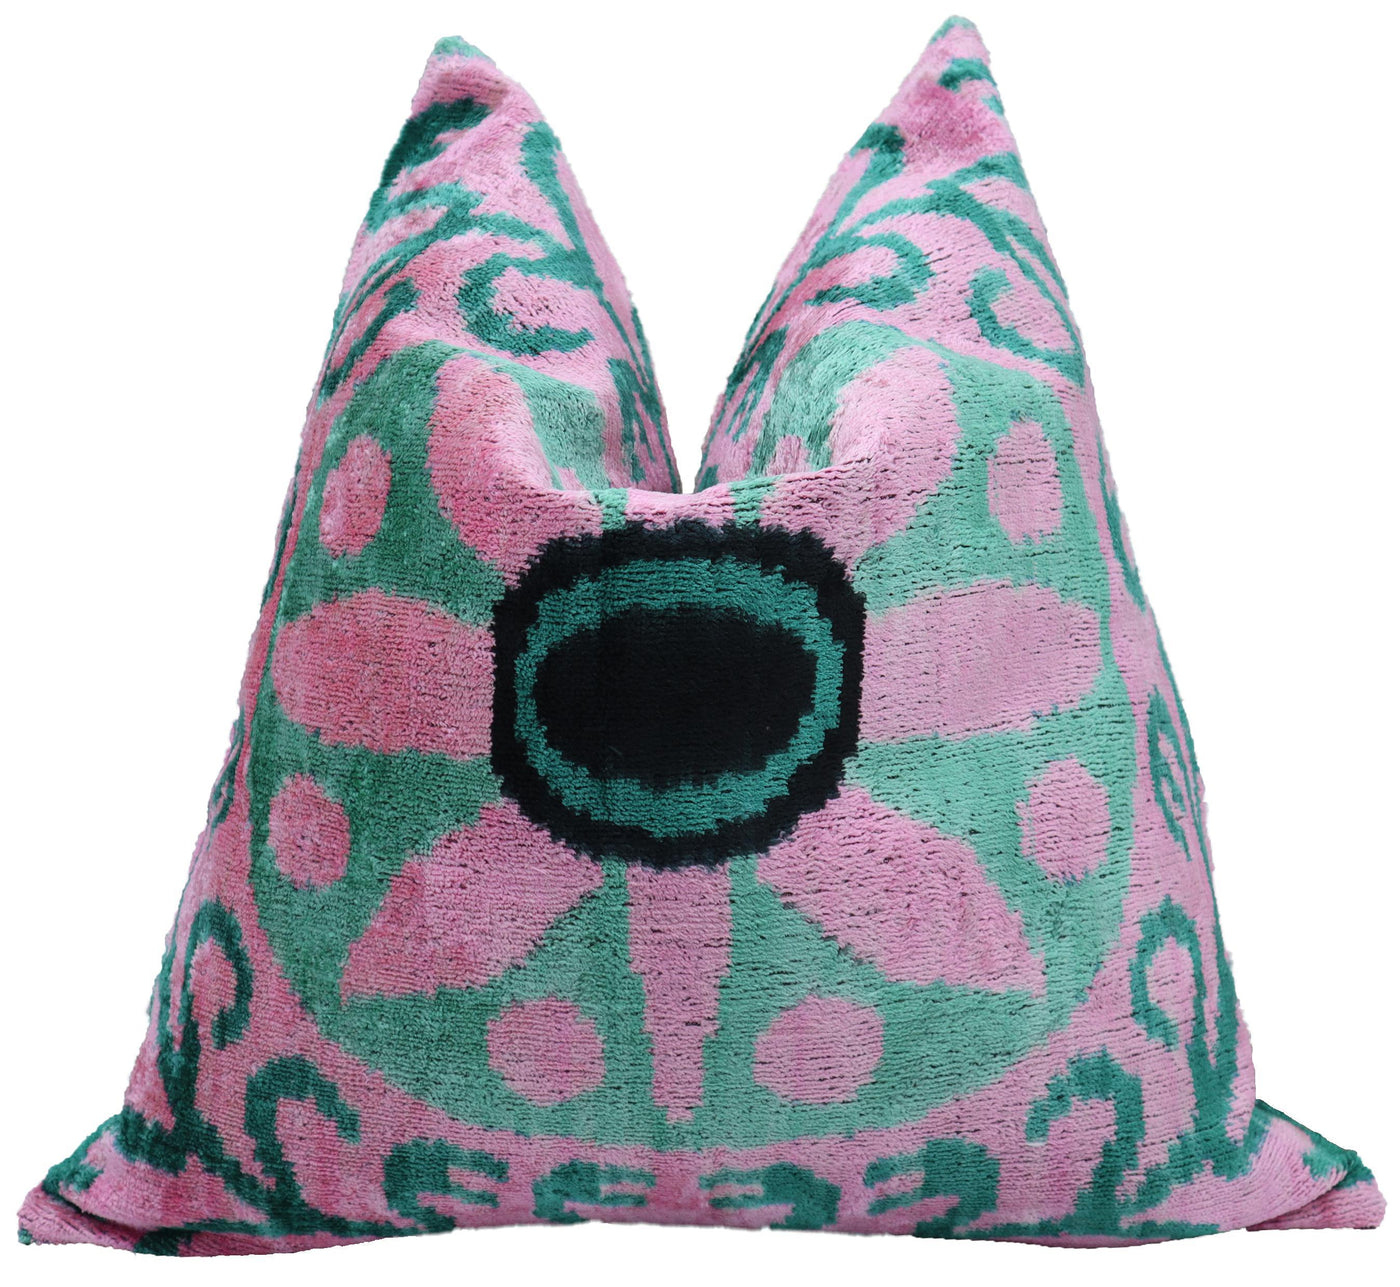 Zipper Pink Velvet Pillows | Zipper Silk Pillows | Canvello